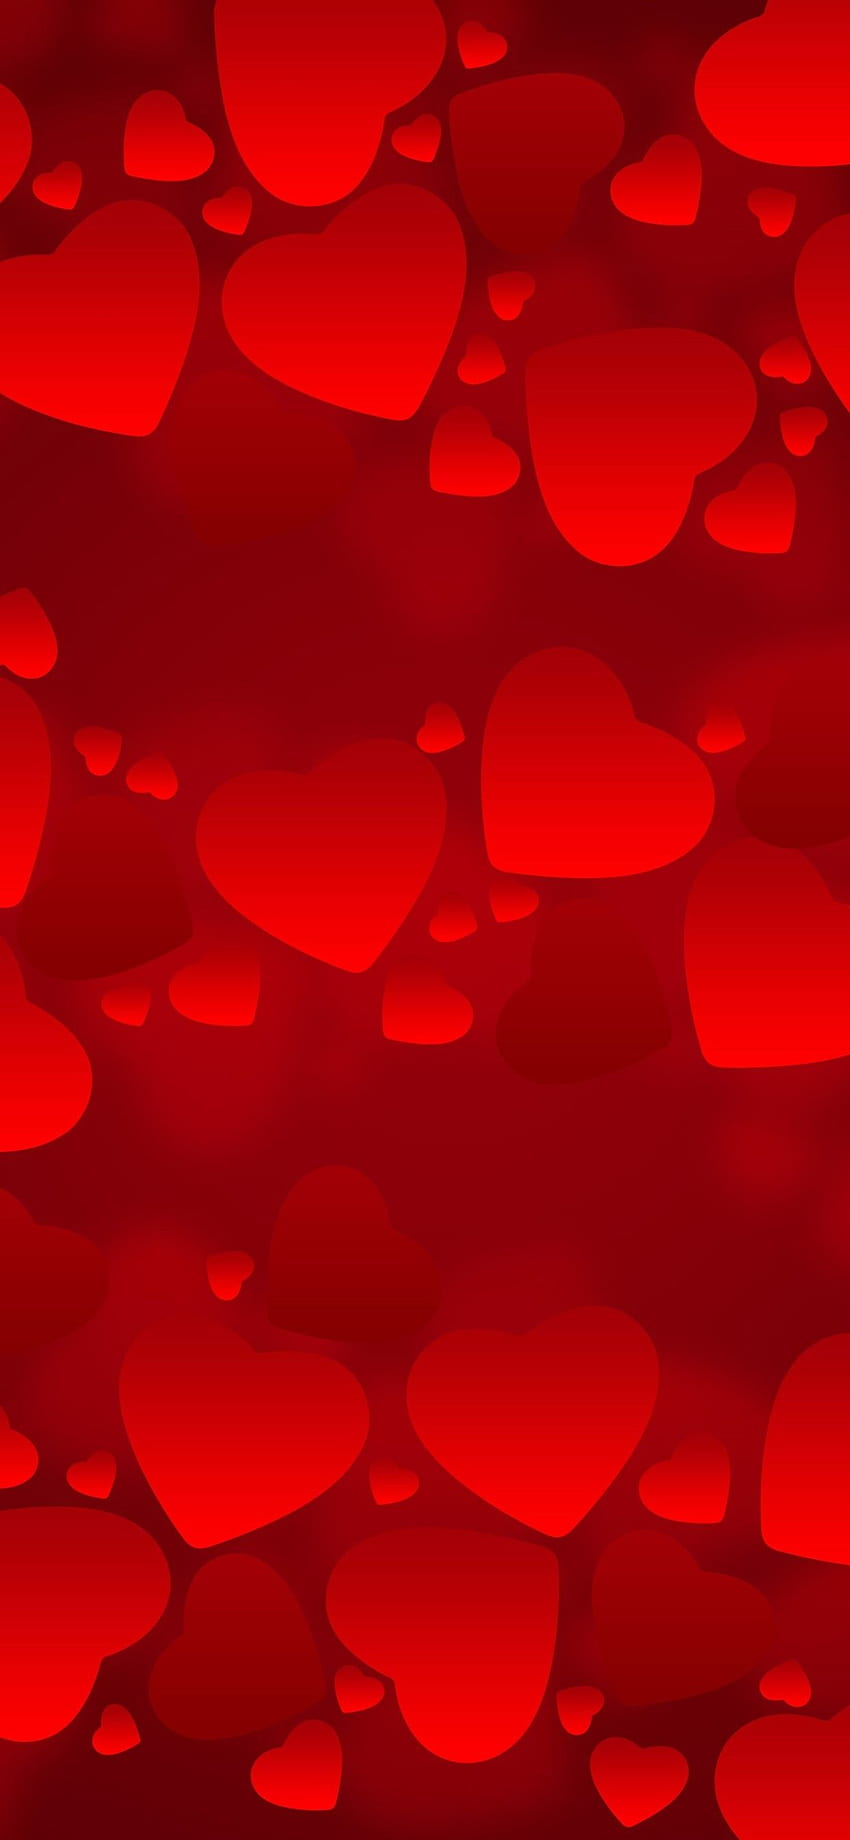 iPhone beaucoup de coeurs d'amour rouges, fond romantique - fond de coeurs Fond d'écran de téléphone HD